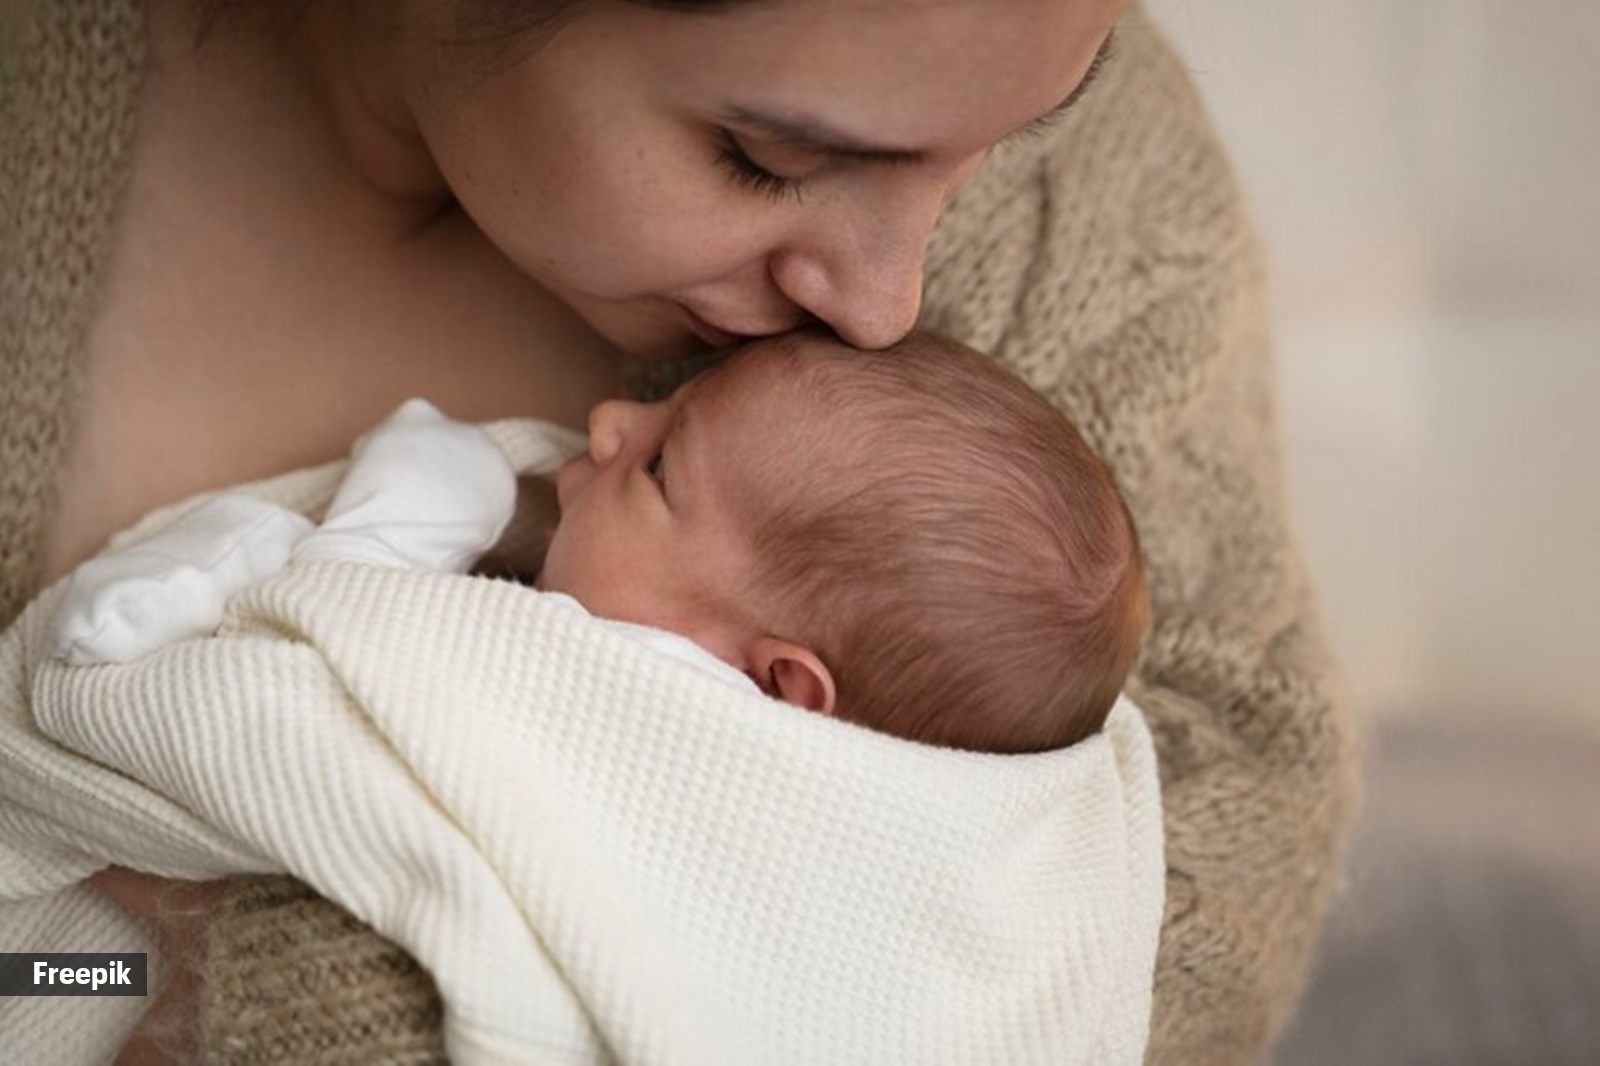 breastfeeding myths debunked